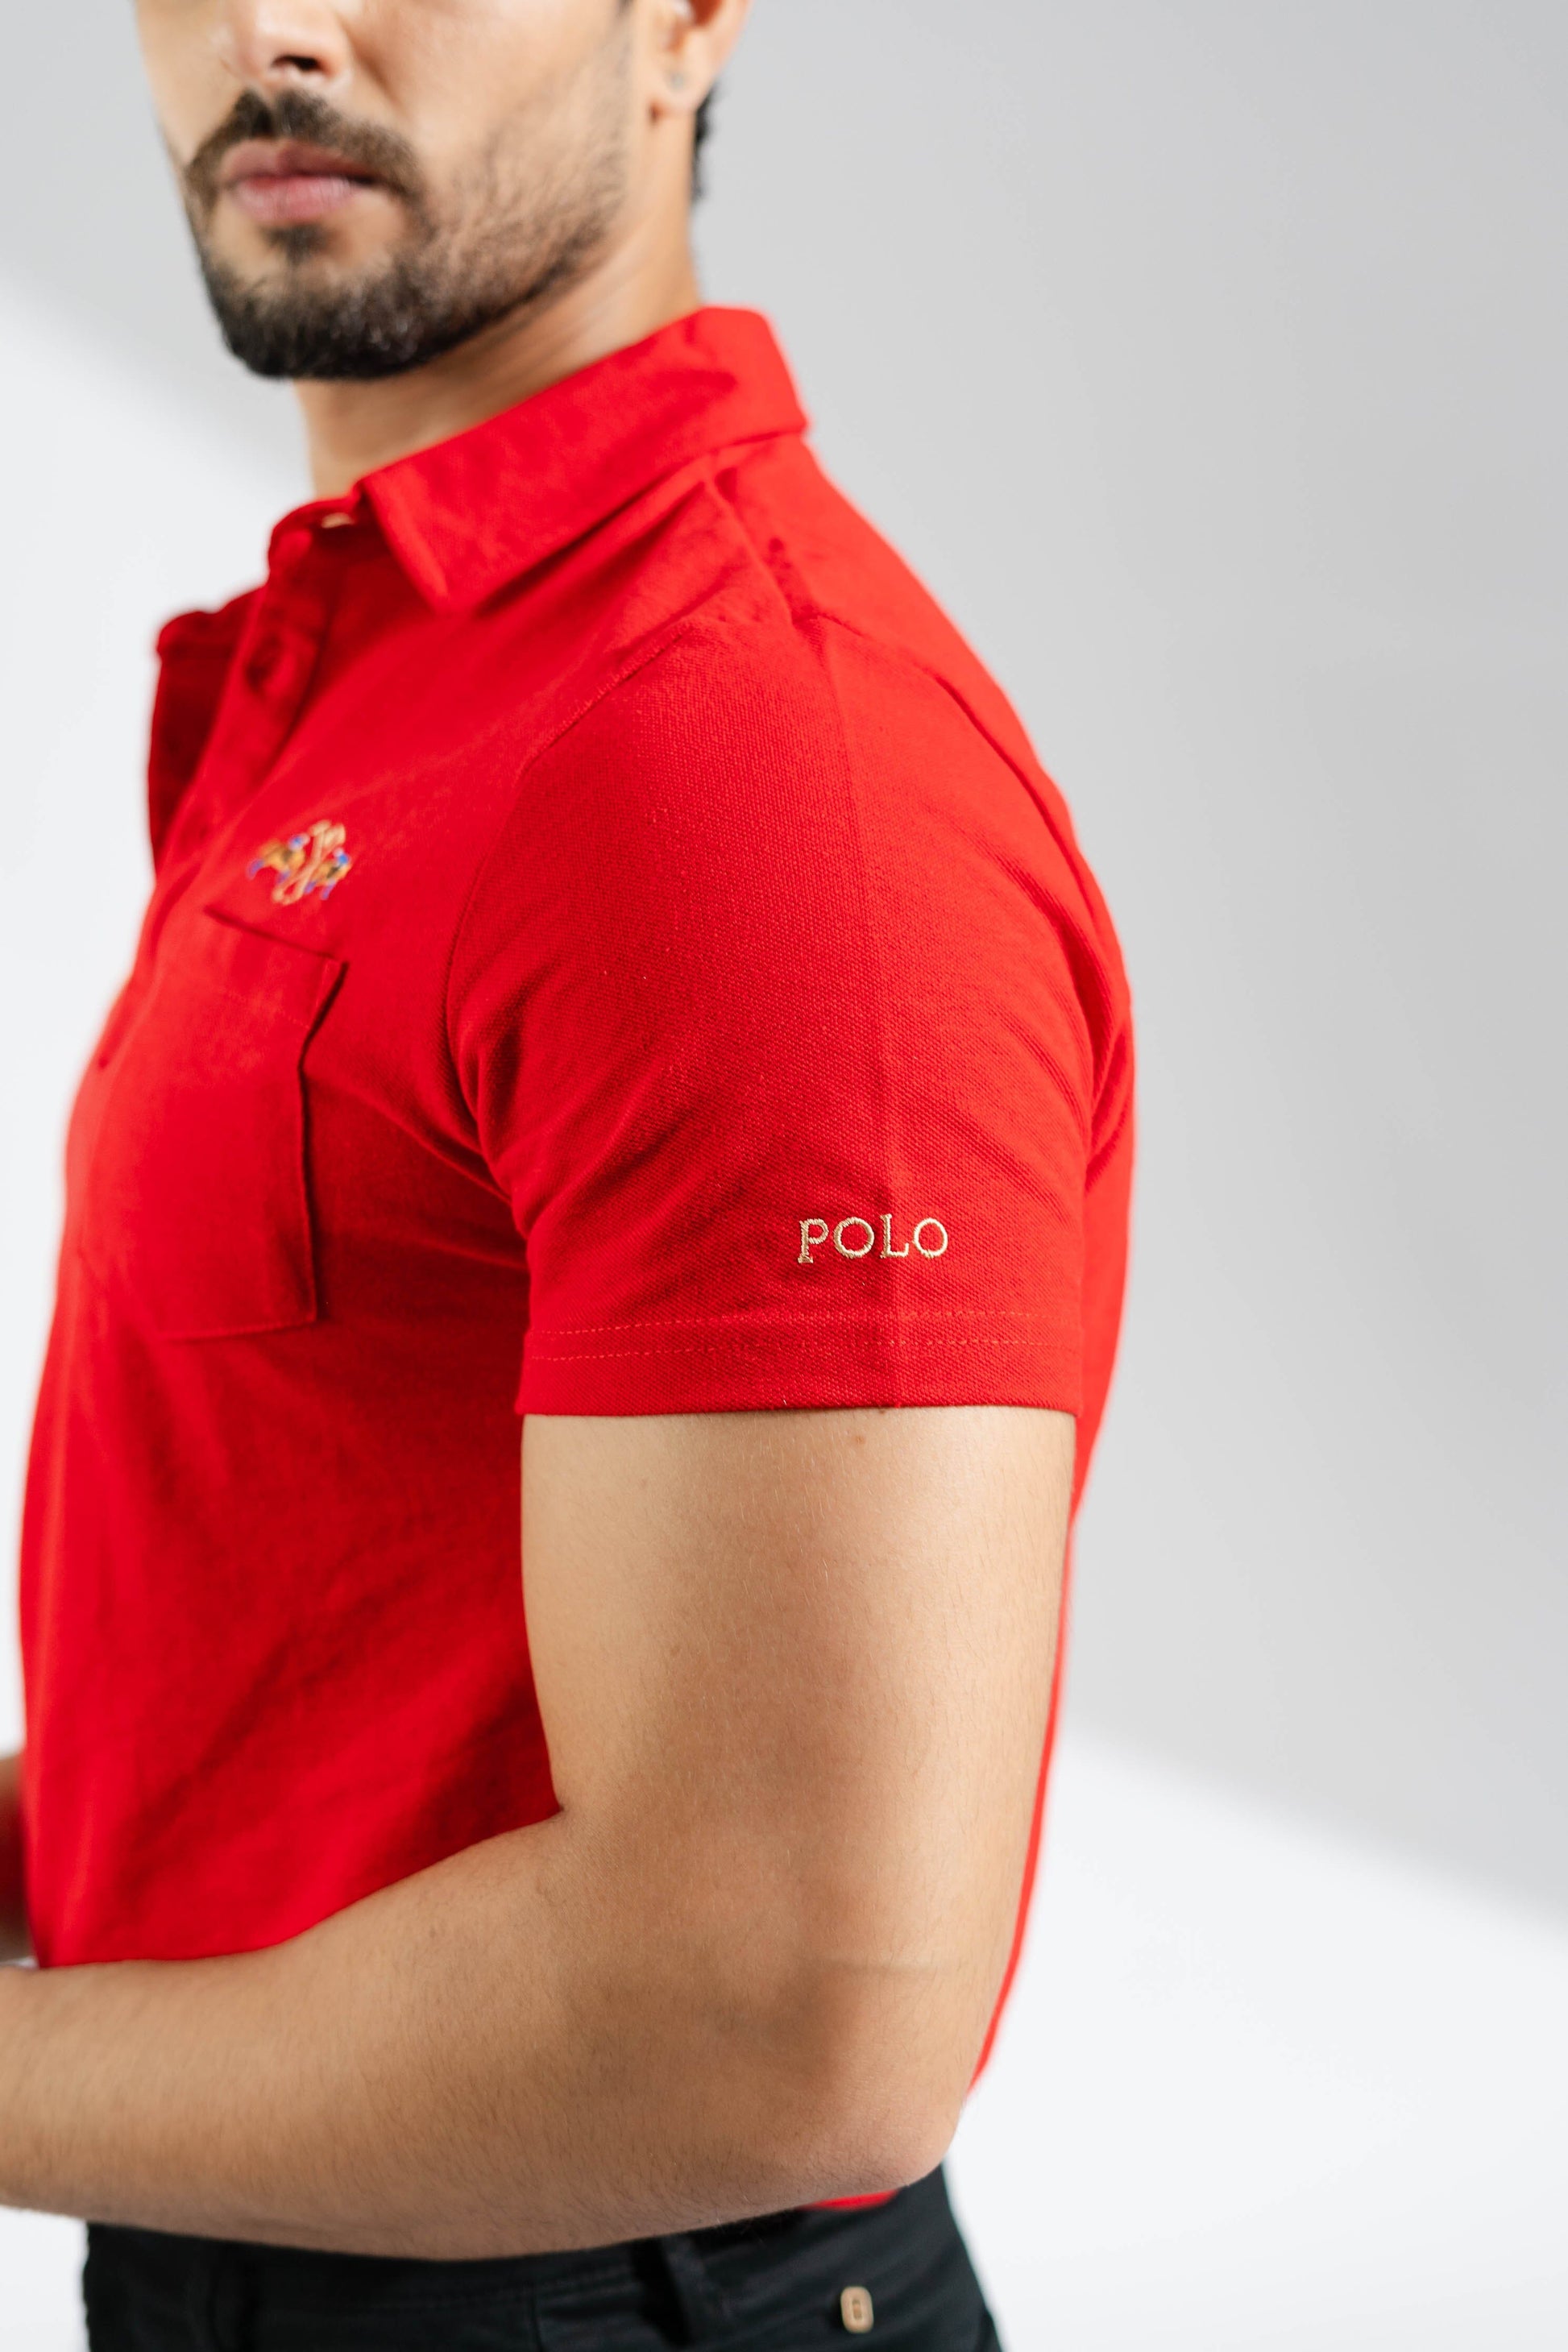 Polo Republica Men's Double Pony Crest & 8 Polo Embroidered Pocket Polo Shirt Men's Polo Shirt Polo Republica 